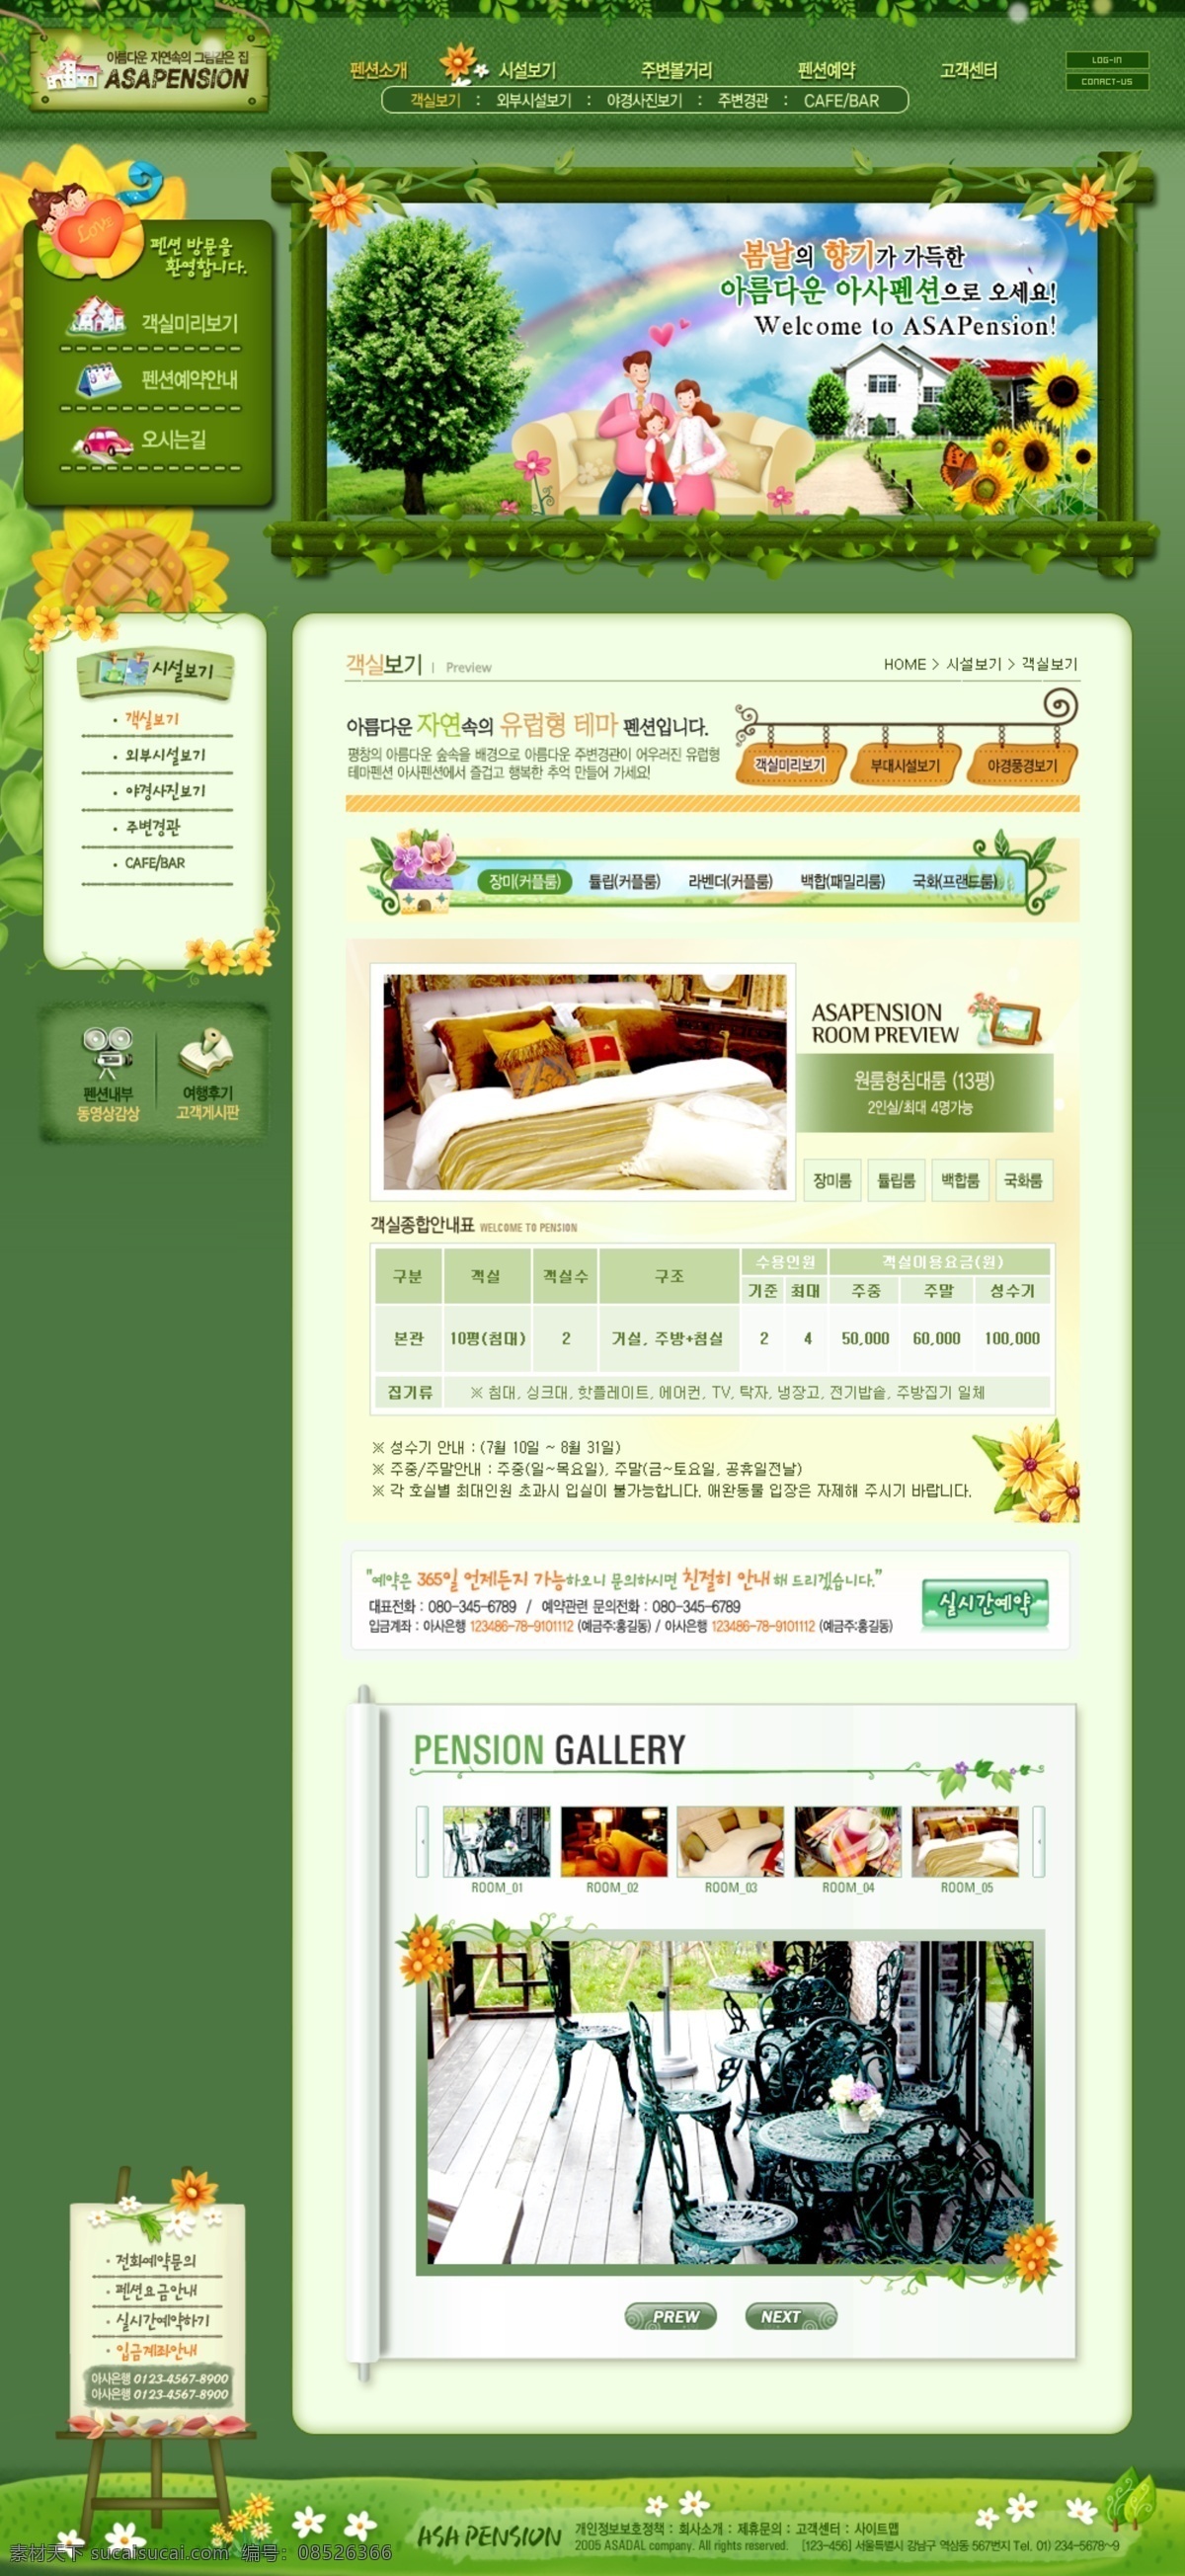 韩国 企业网站 模板 分层素材 格式 psd格式 设计素材 网站模板 网页模板 网页素材 白色